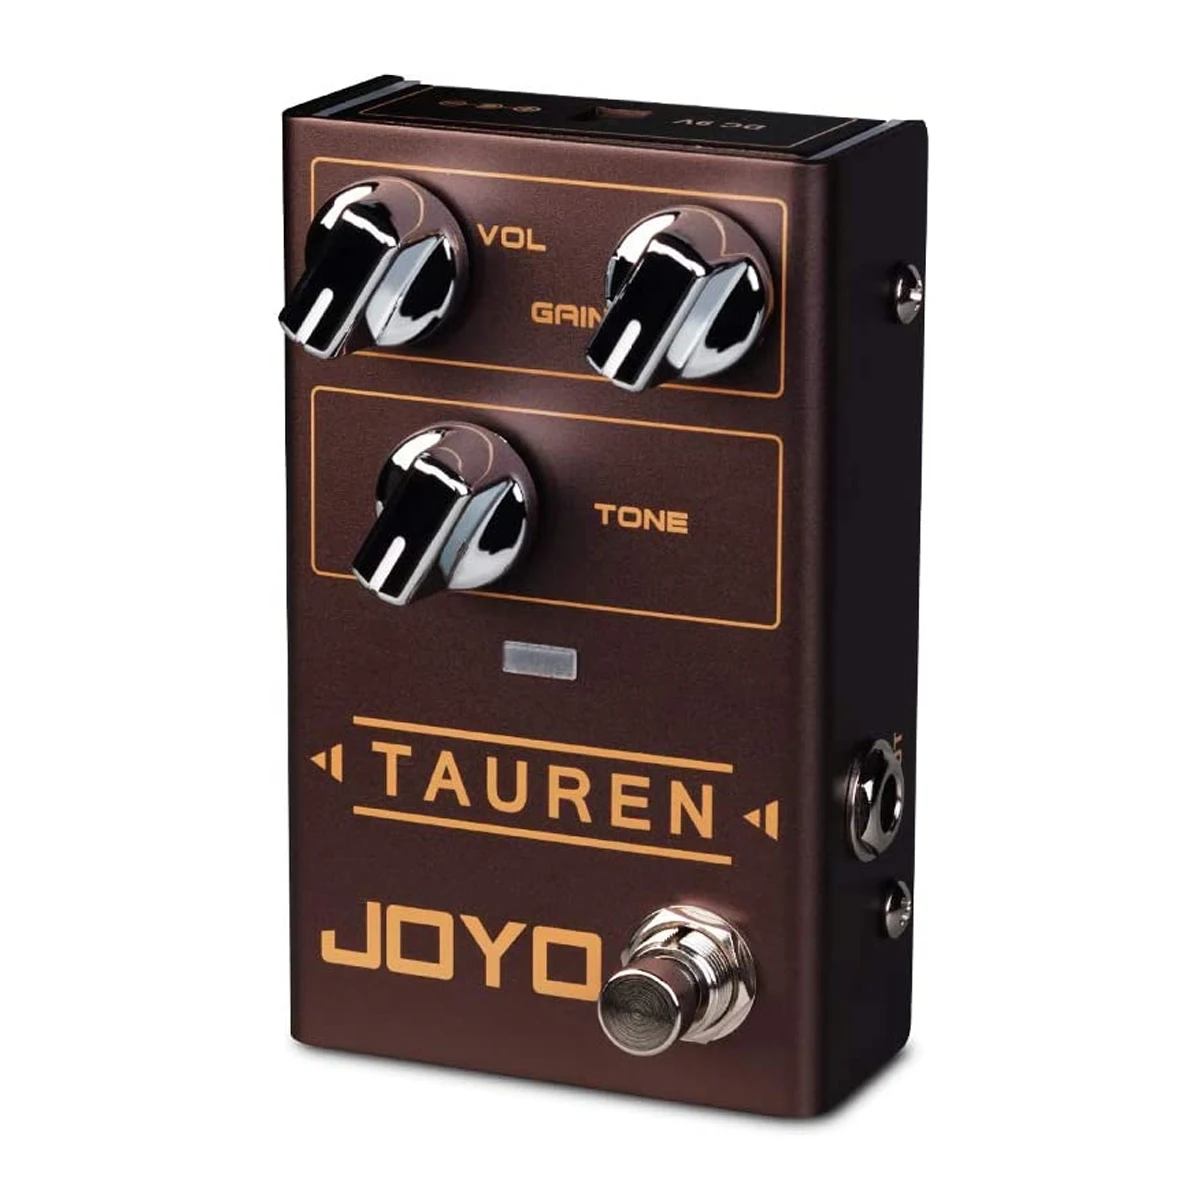 JOYO Tauren R-01 Педаль гитарного эффекта Overdrive Clean Boost Distortion Гитарные аксессуары